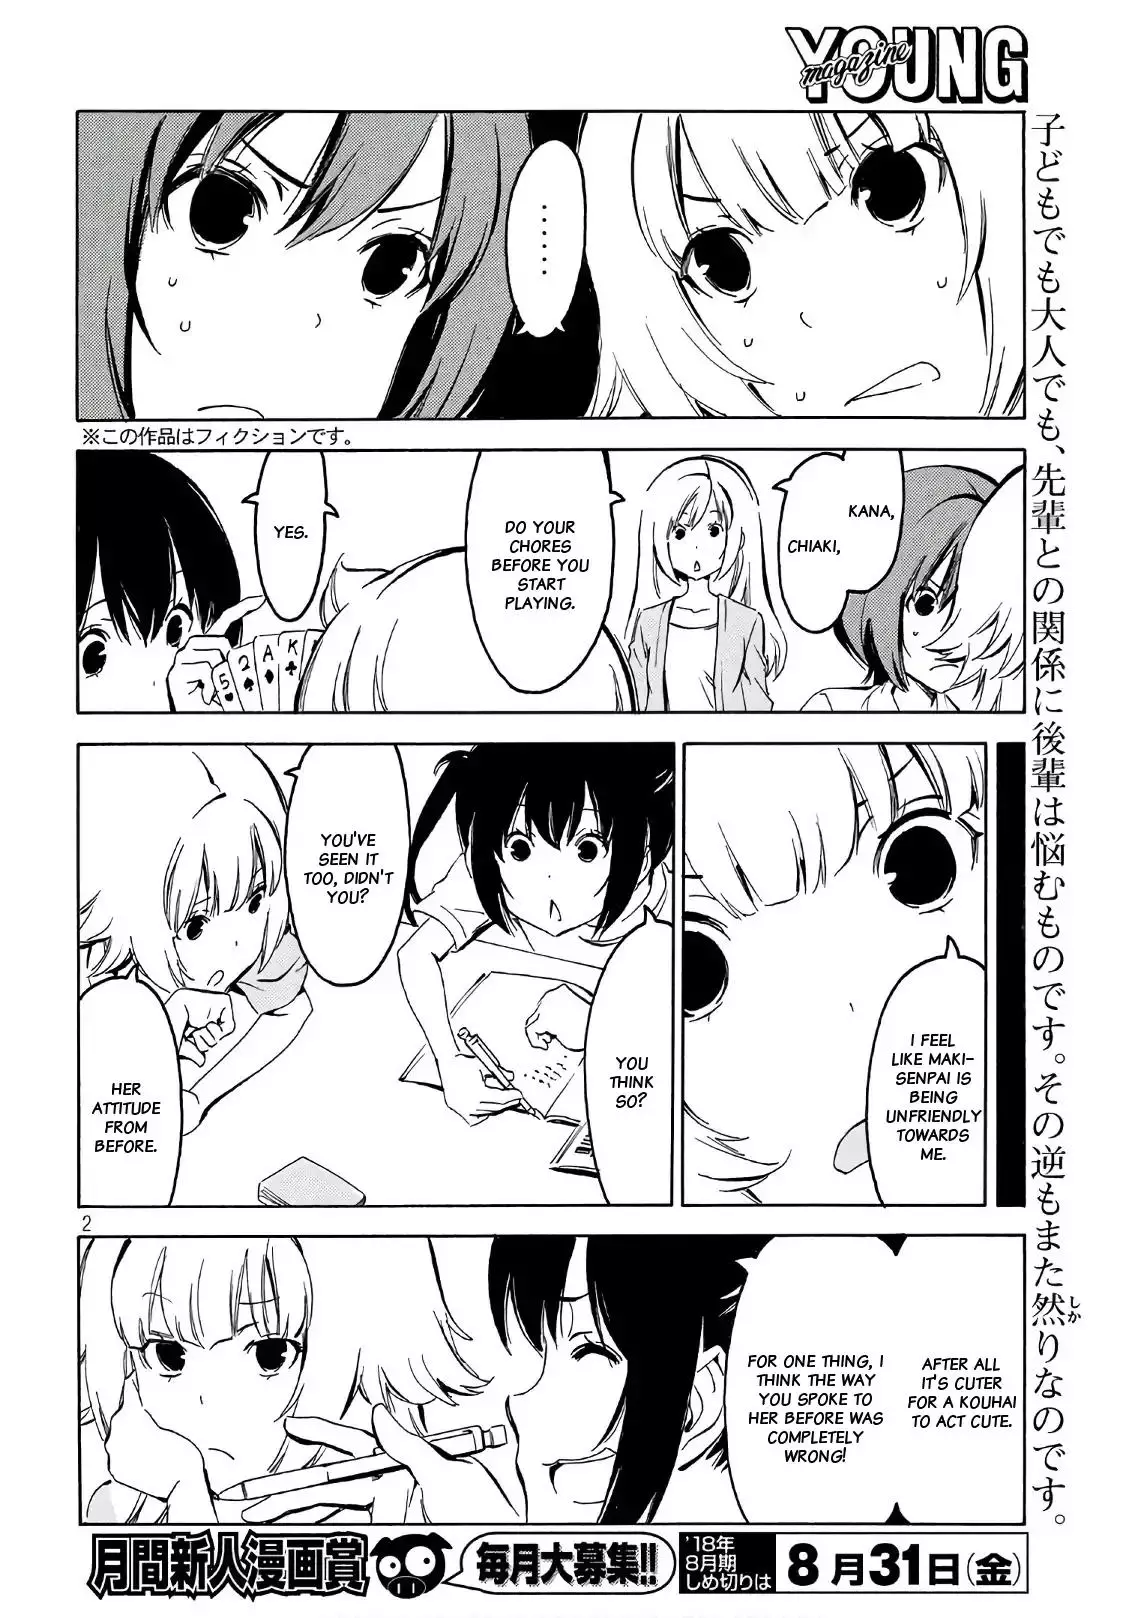 Minami-ke - 347 page 1